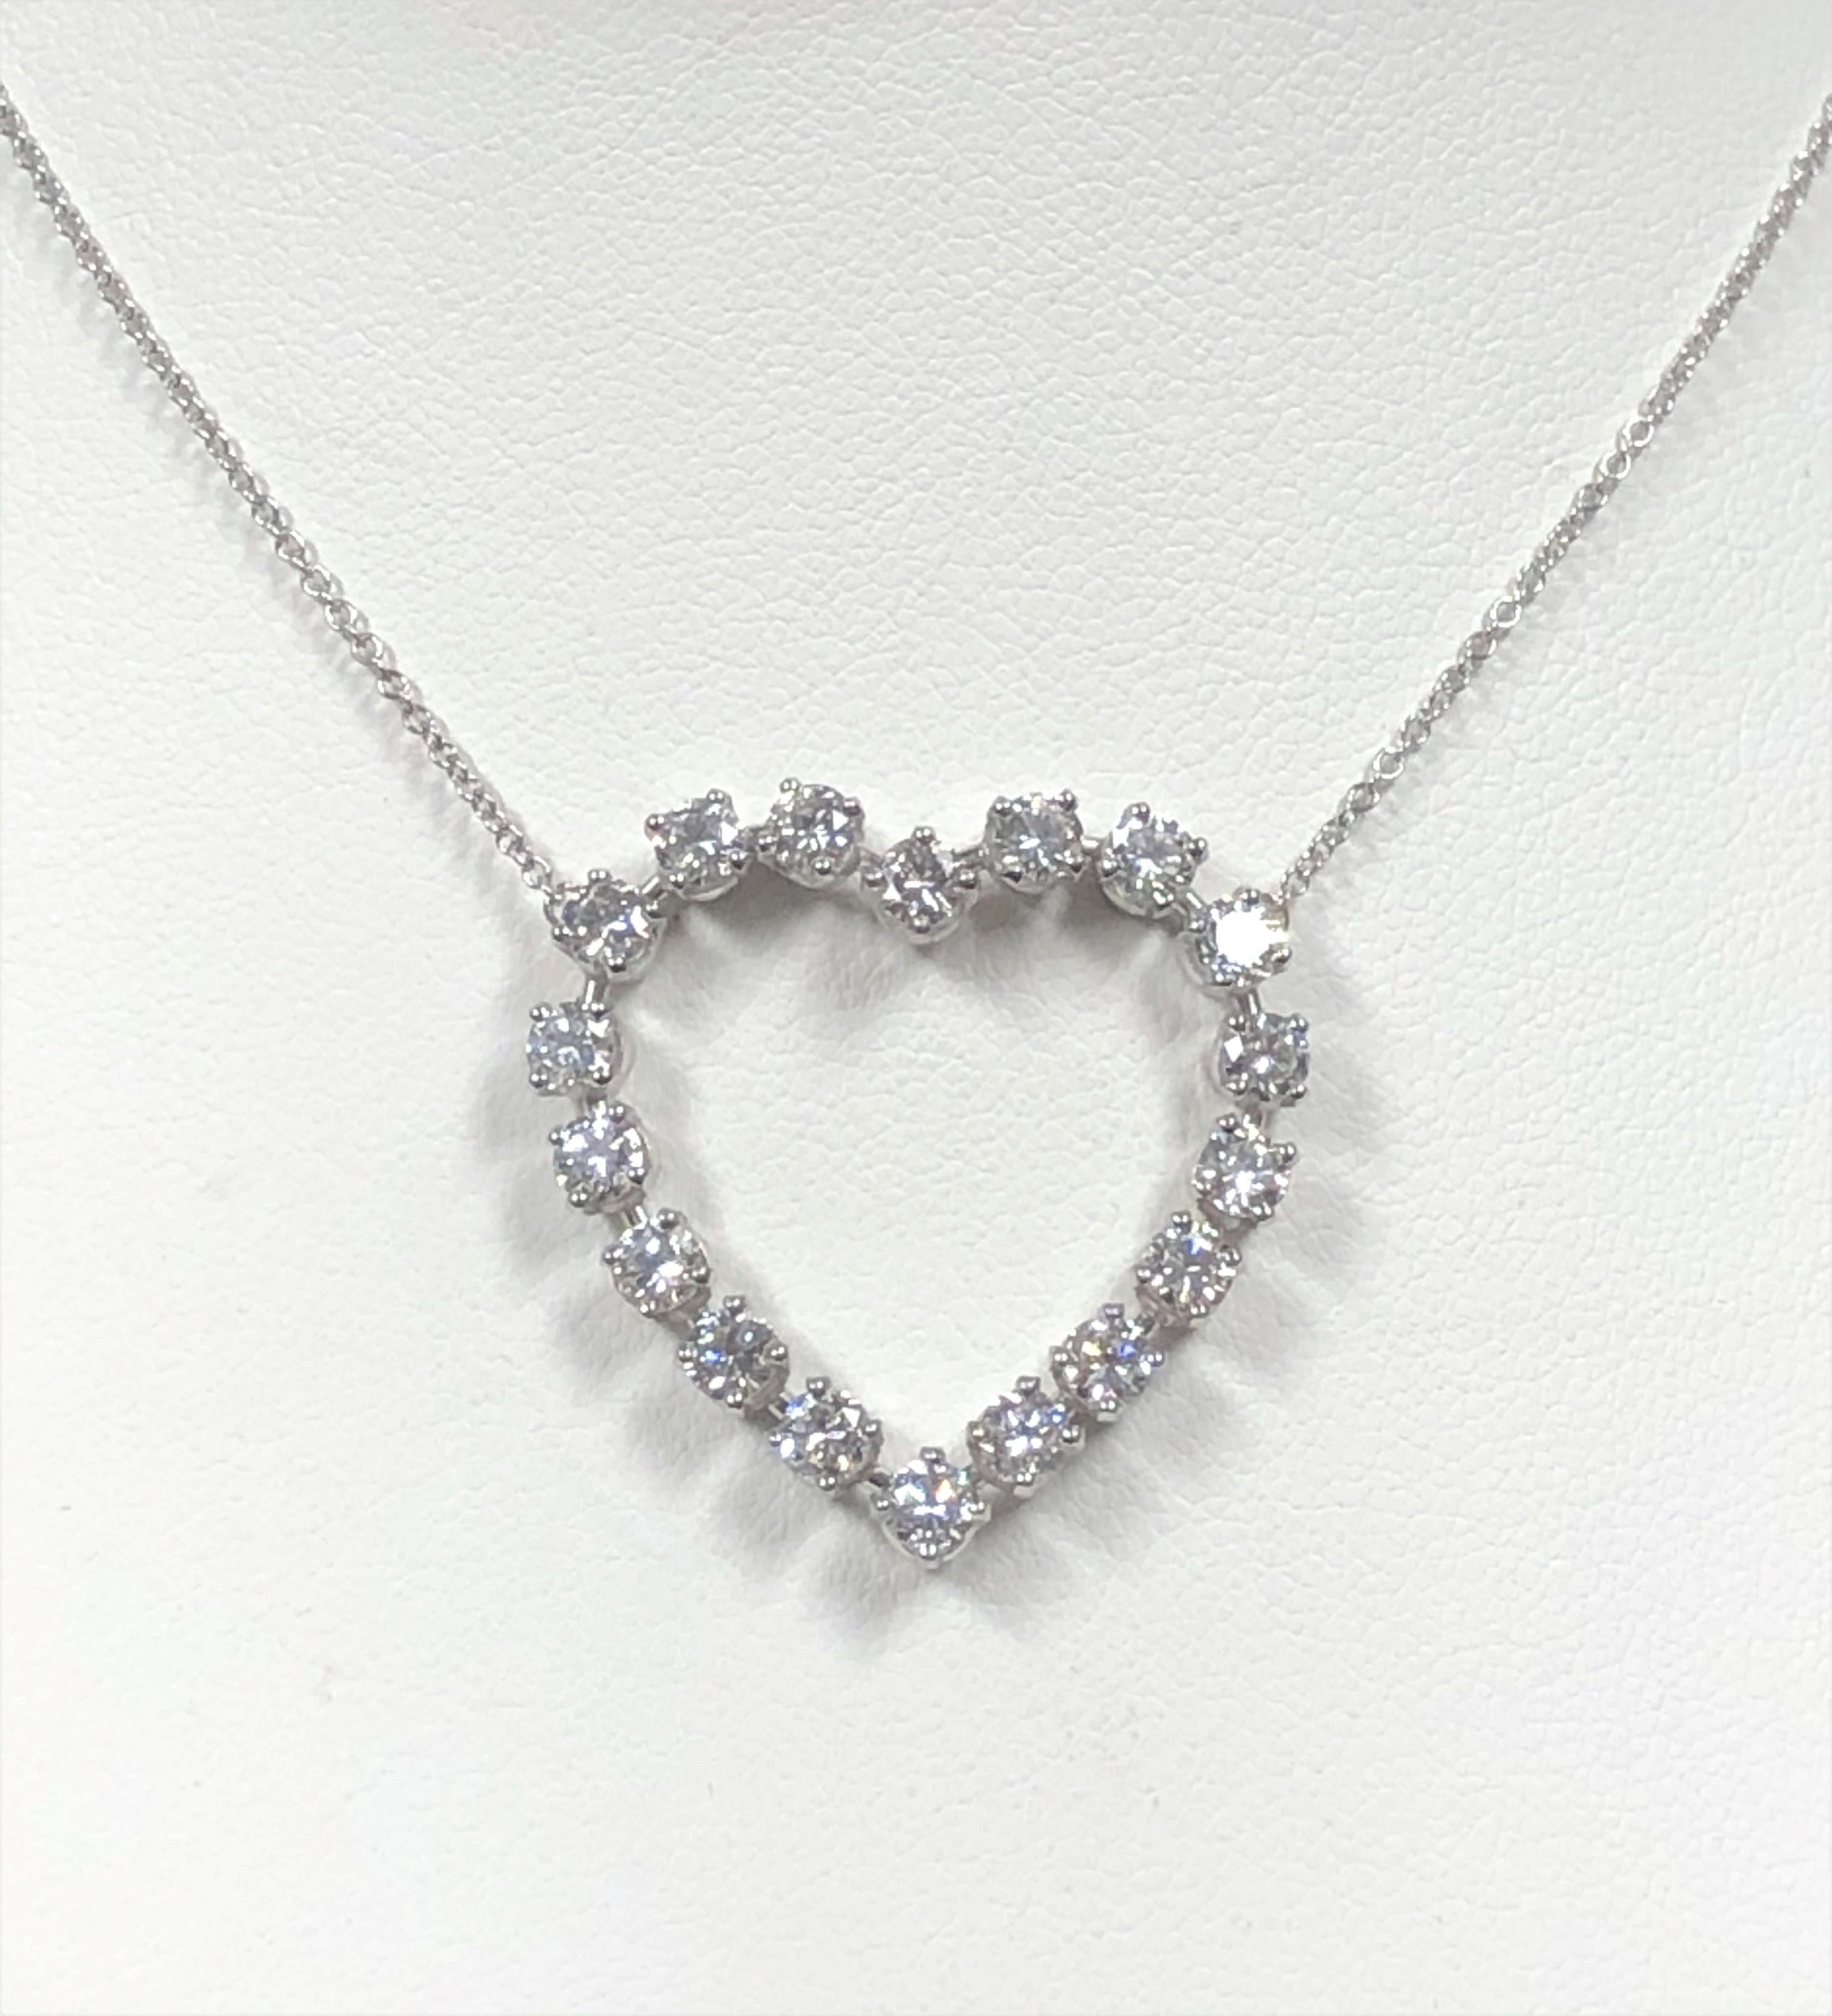 Circa 1990er Jahre Tiffany & Company Platin Open Heart Necklace, das Herz misst 1 1/8 X 1 1/8 Zoll und ist mit feinen weißen runden Diamanten im Brillantschliff von insgesamt 2 Karat besetzt. Aufgehängt an einer 16-Zoll-Platin-Gliederkette, sind